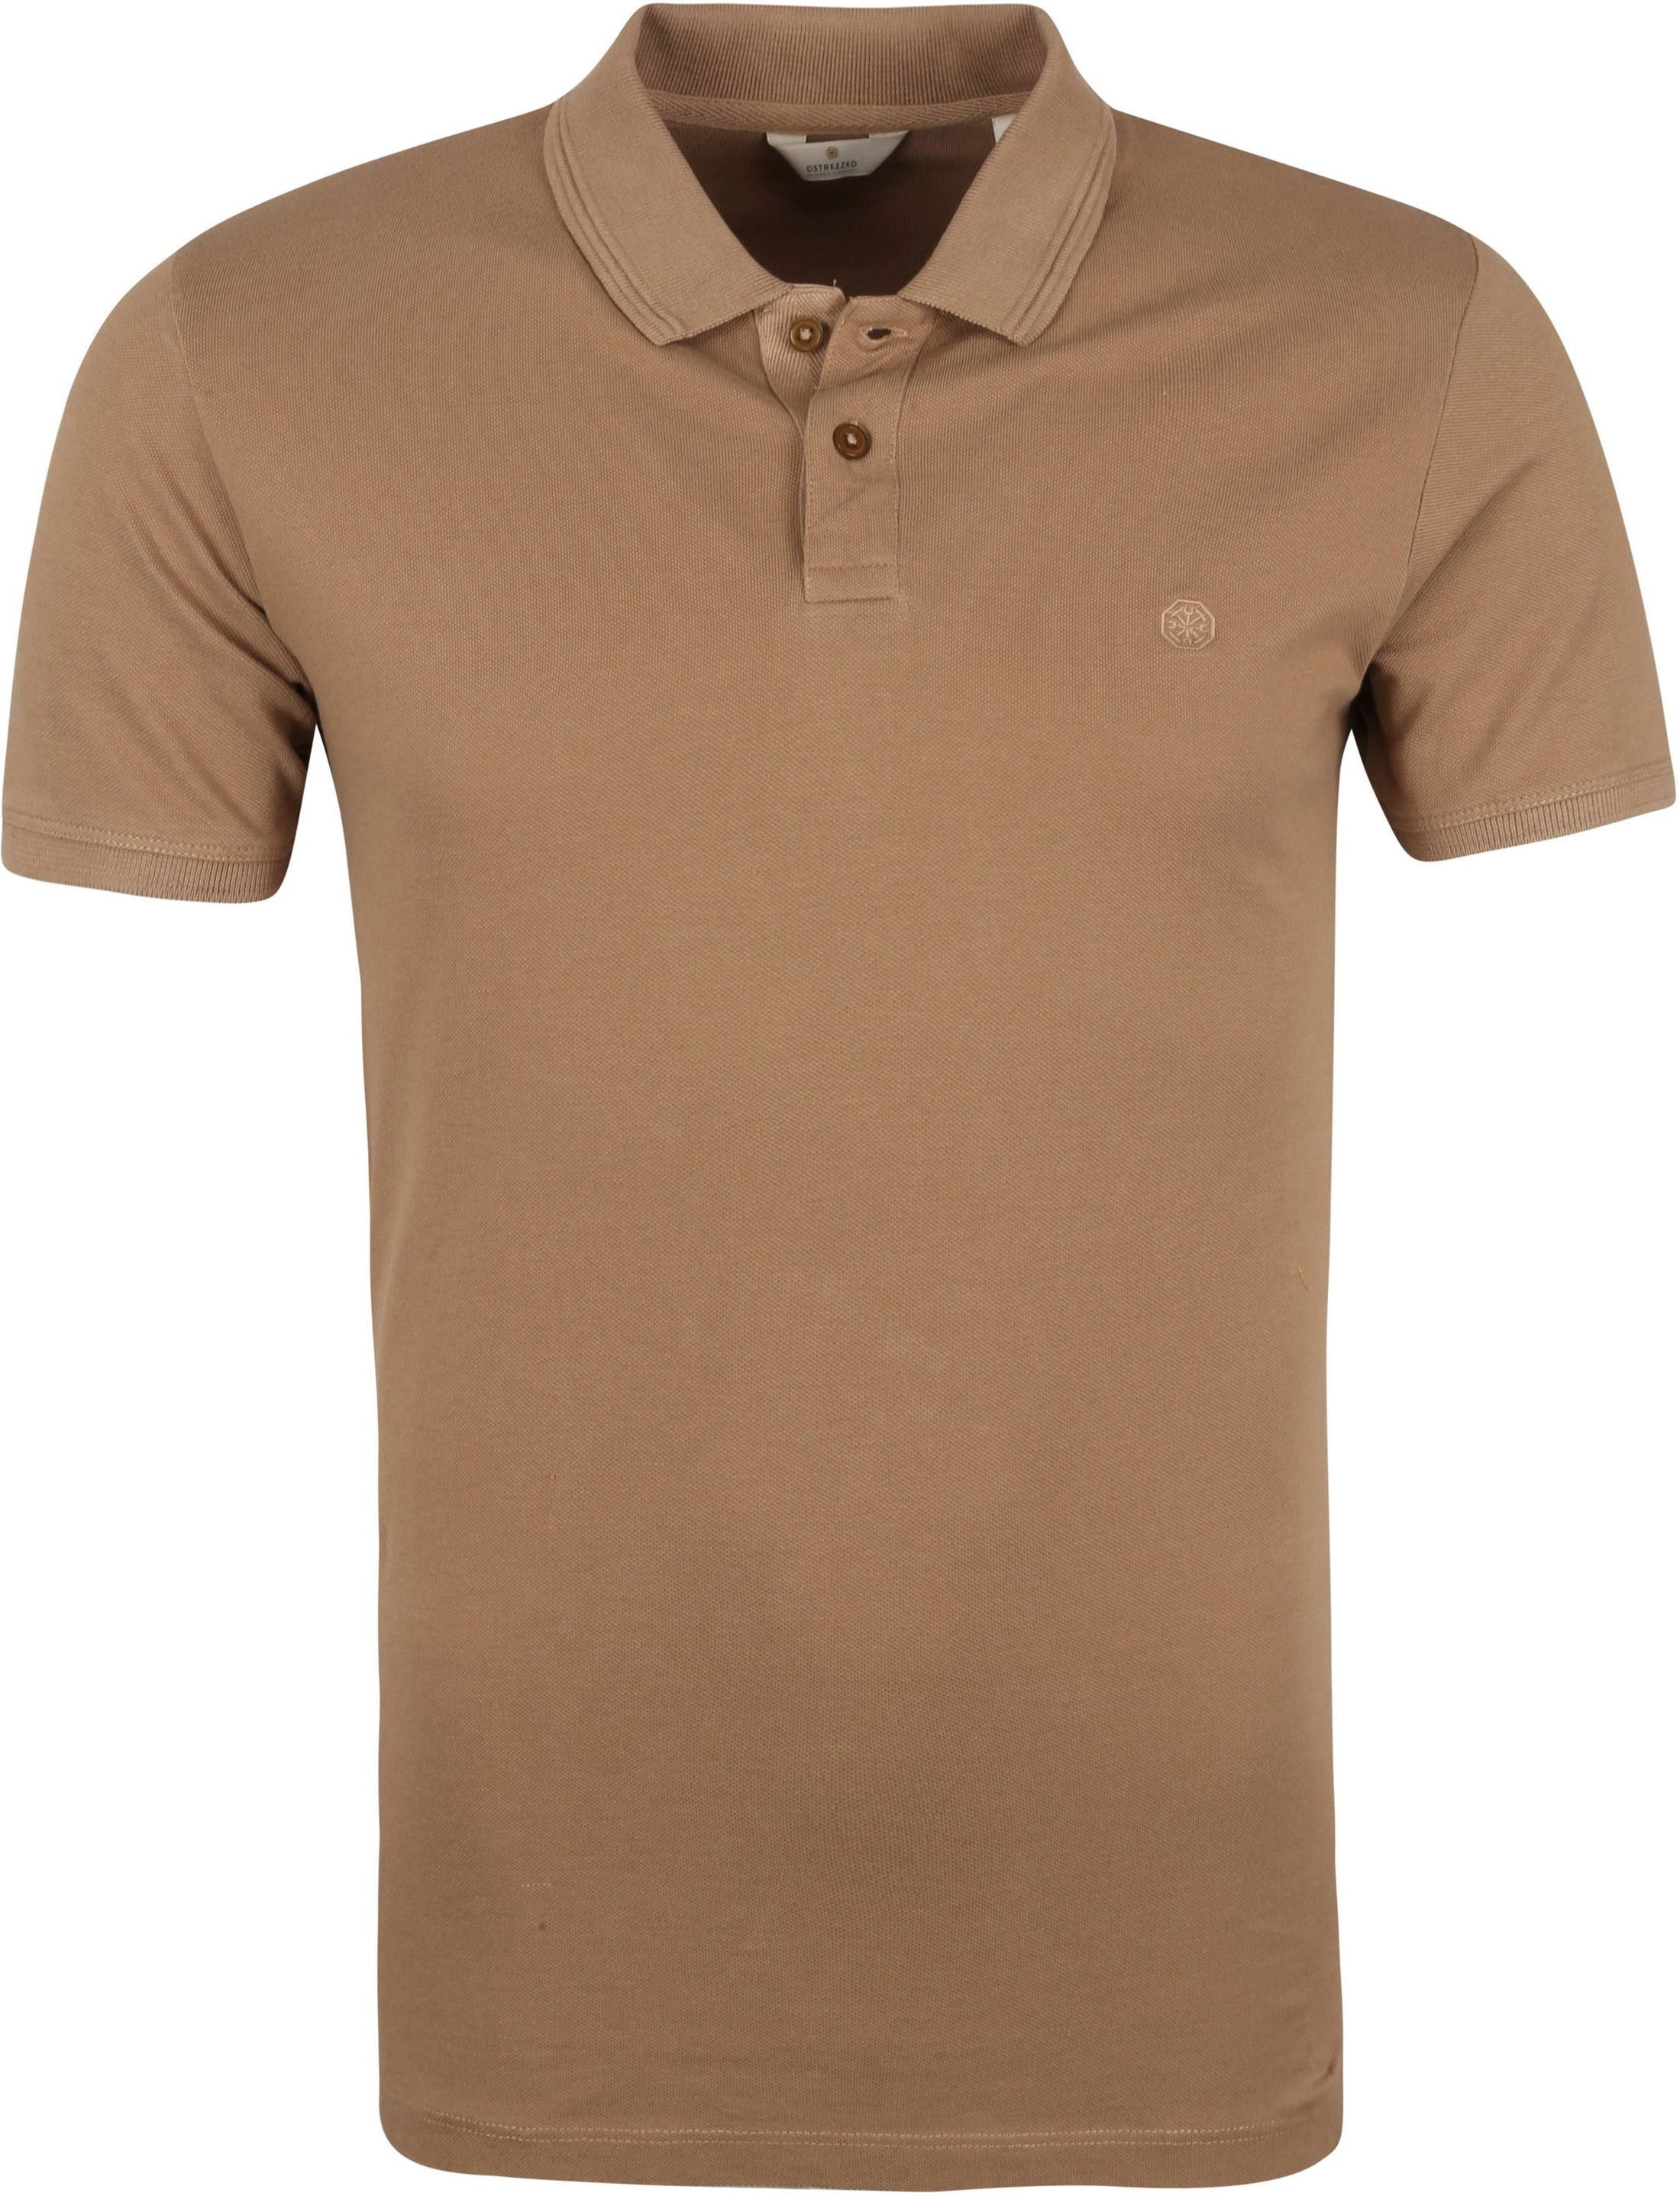 Dstrezzed Pique Polo Shirt Bowie Brown size L